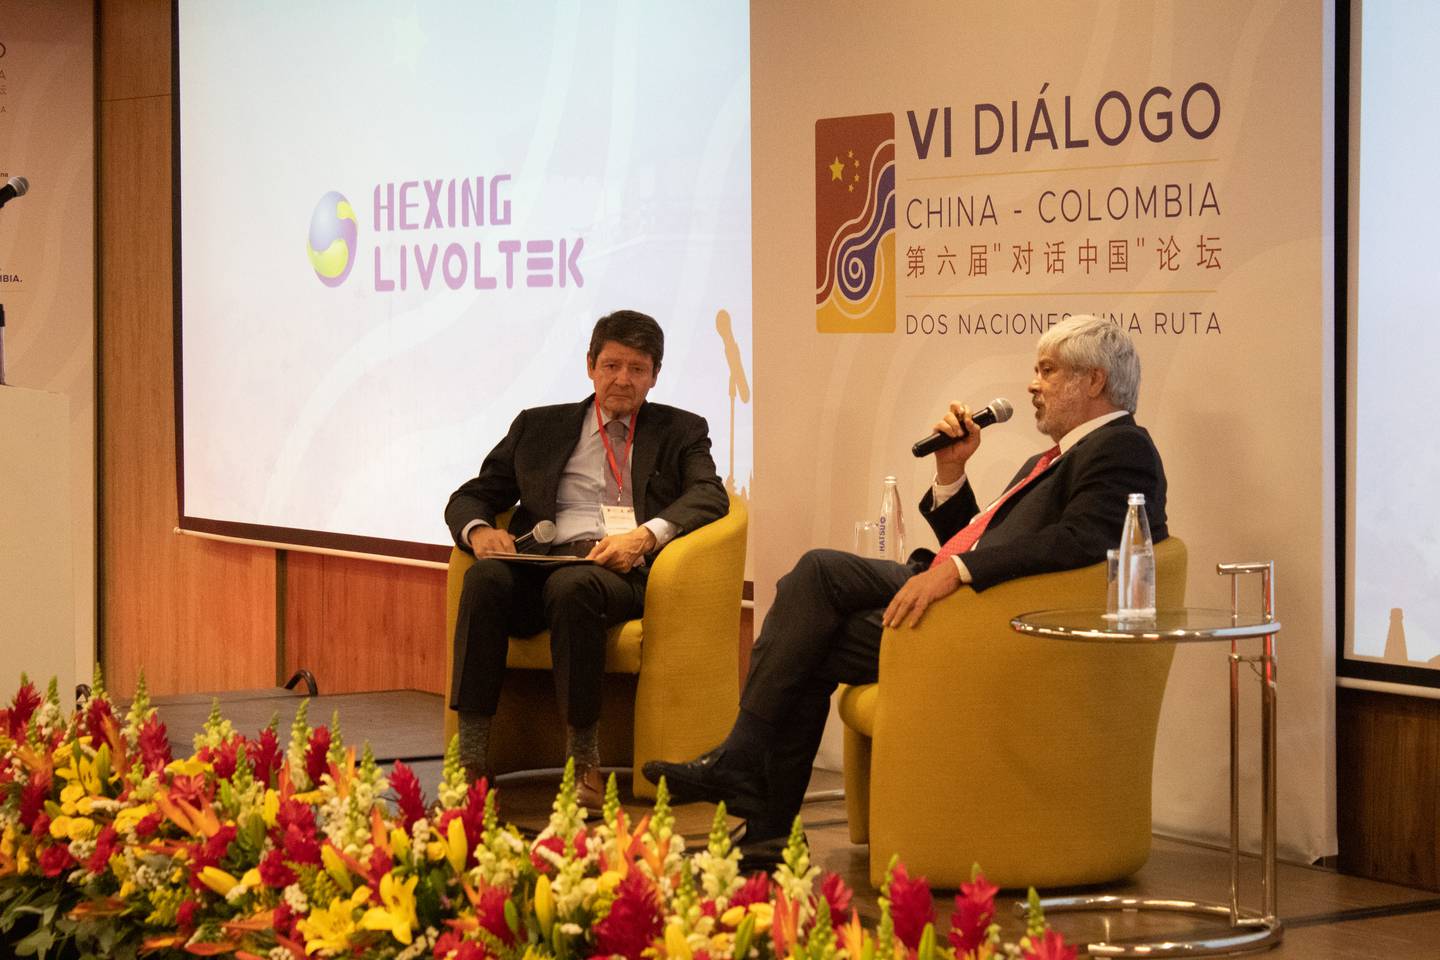 De izquierda a derecha Carlos Ronderos, presidente de la Junta Directiva de la Cámara Colombo China de Inversión y Comercio, y Germán Umaña, ministro de Comercio.dfd